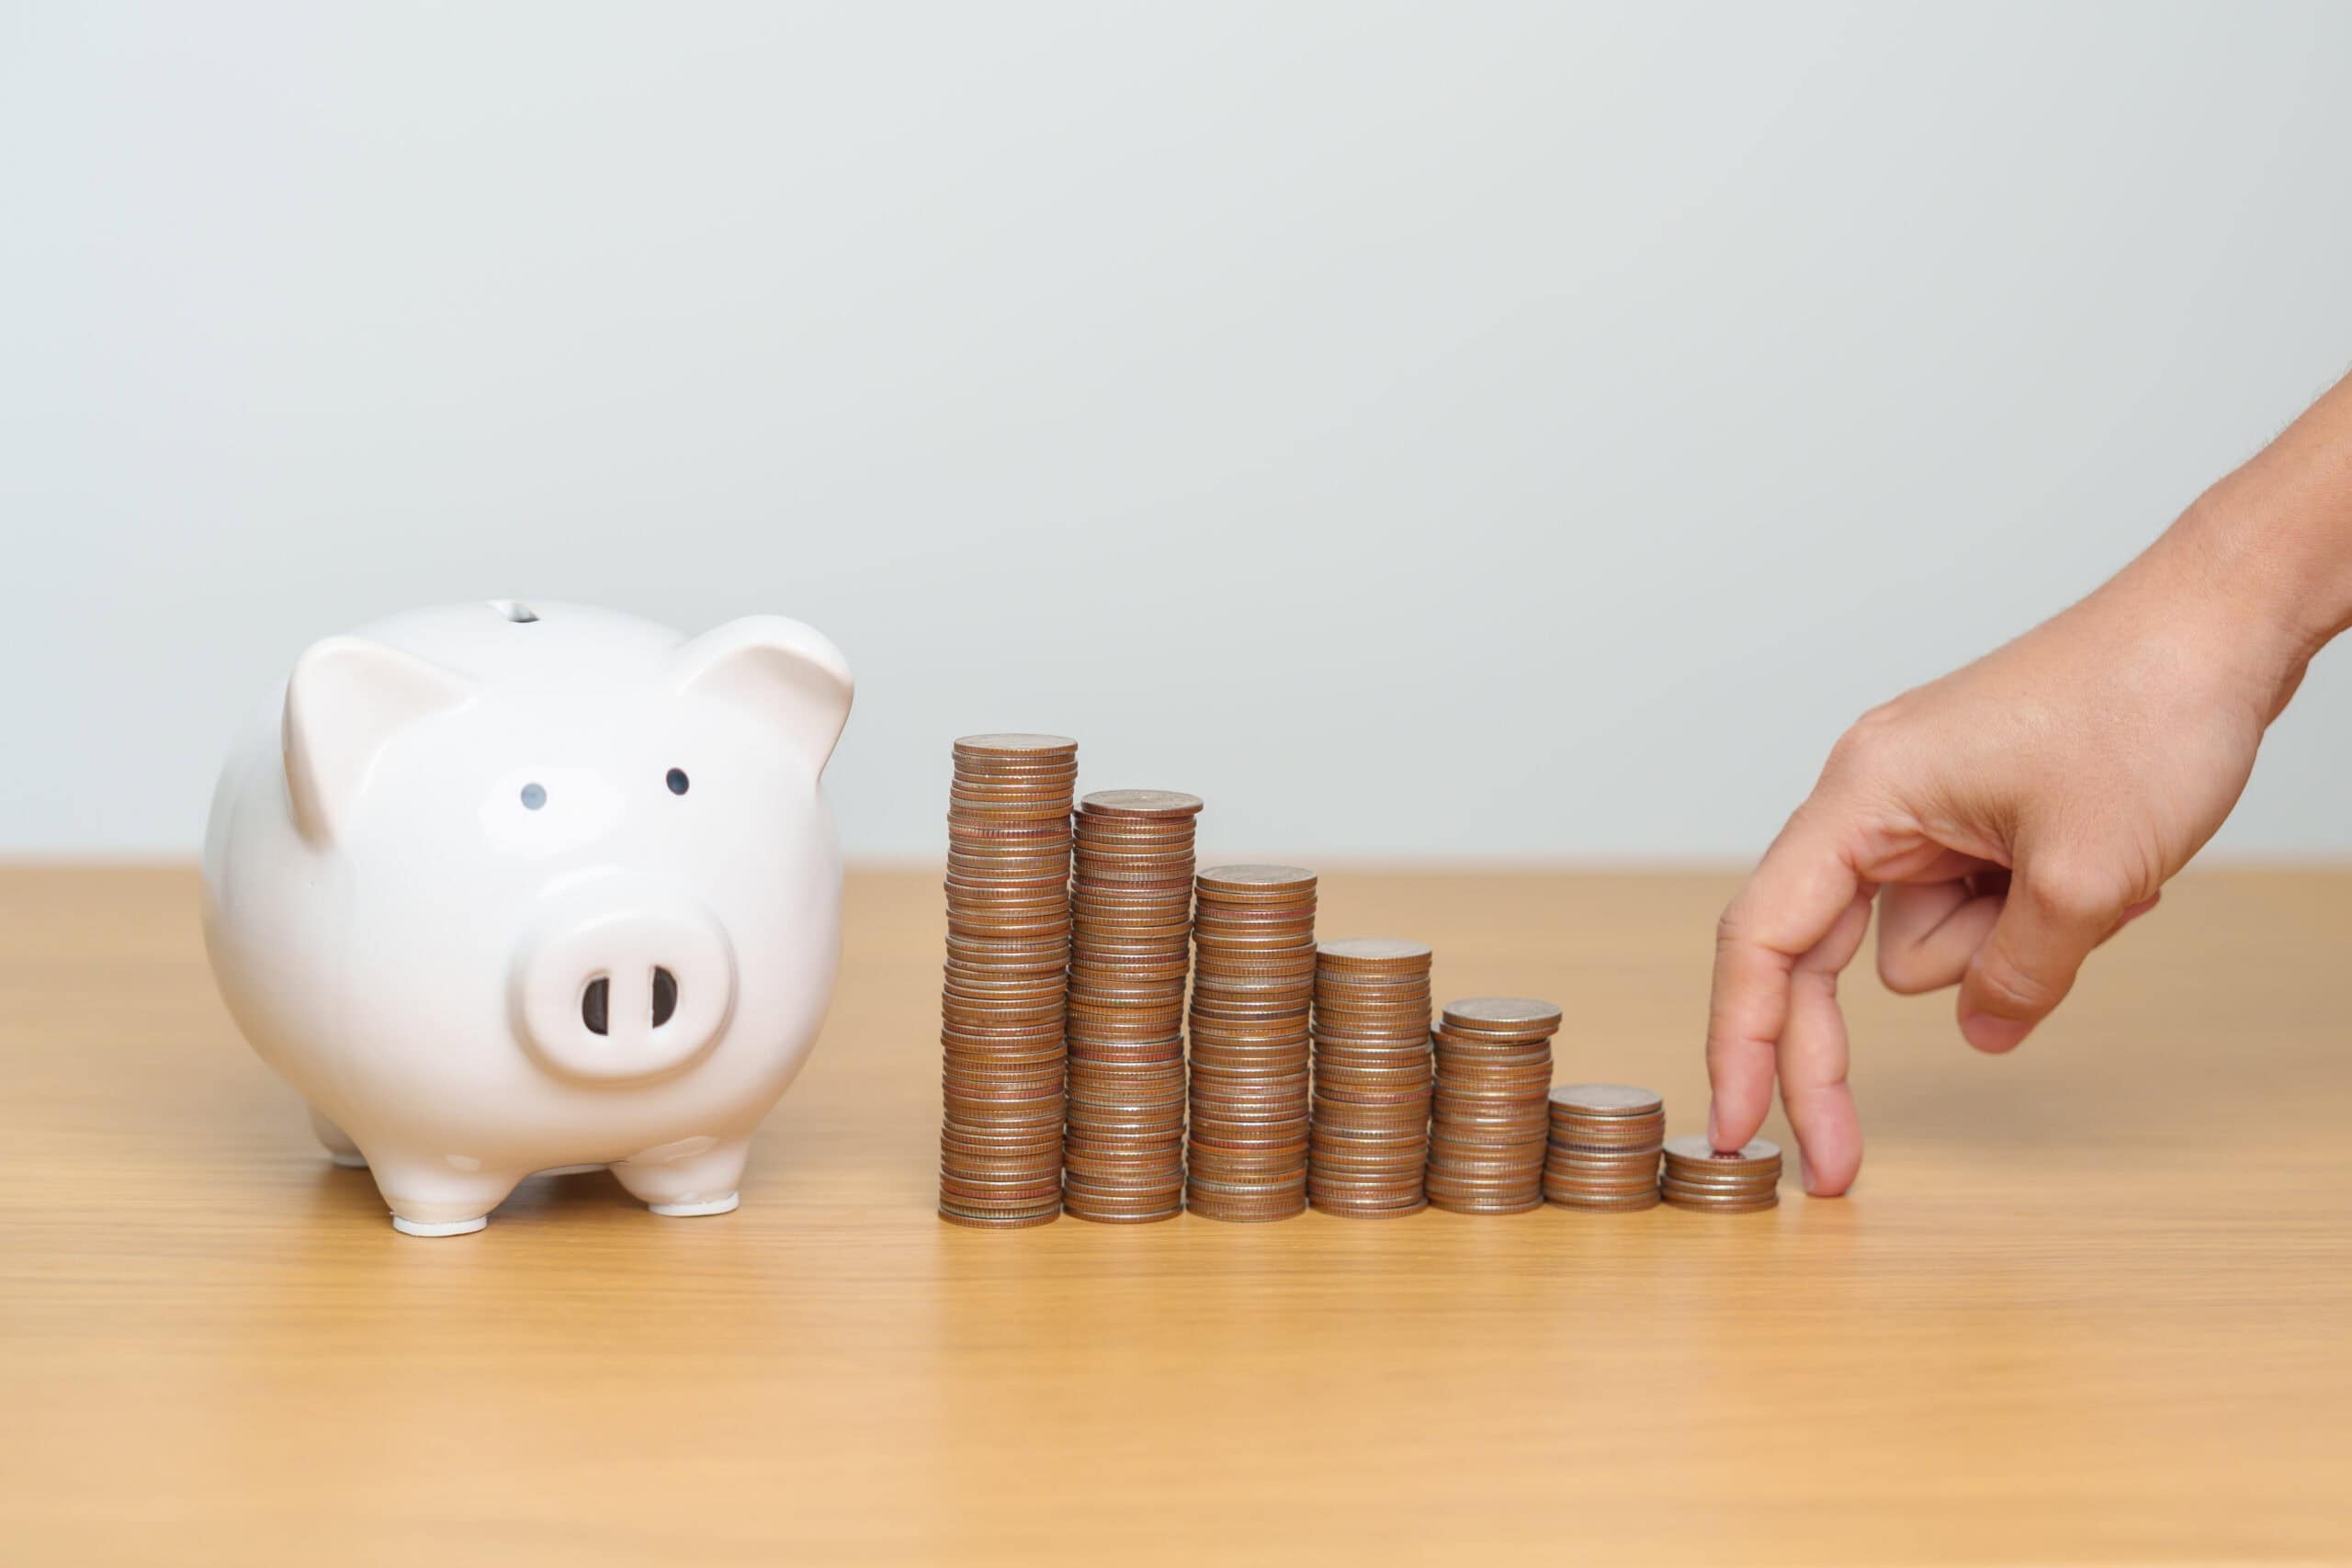 Ein Sparschwein auf dem Tisch, mit Münzen davor, die den geldwerten Vorteil symbolisieren.